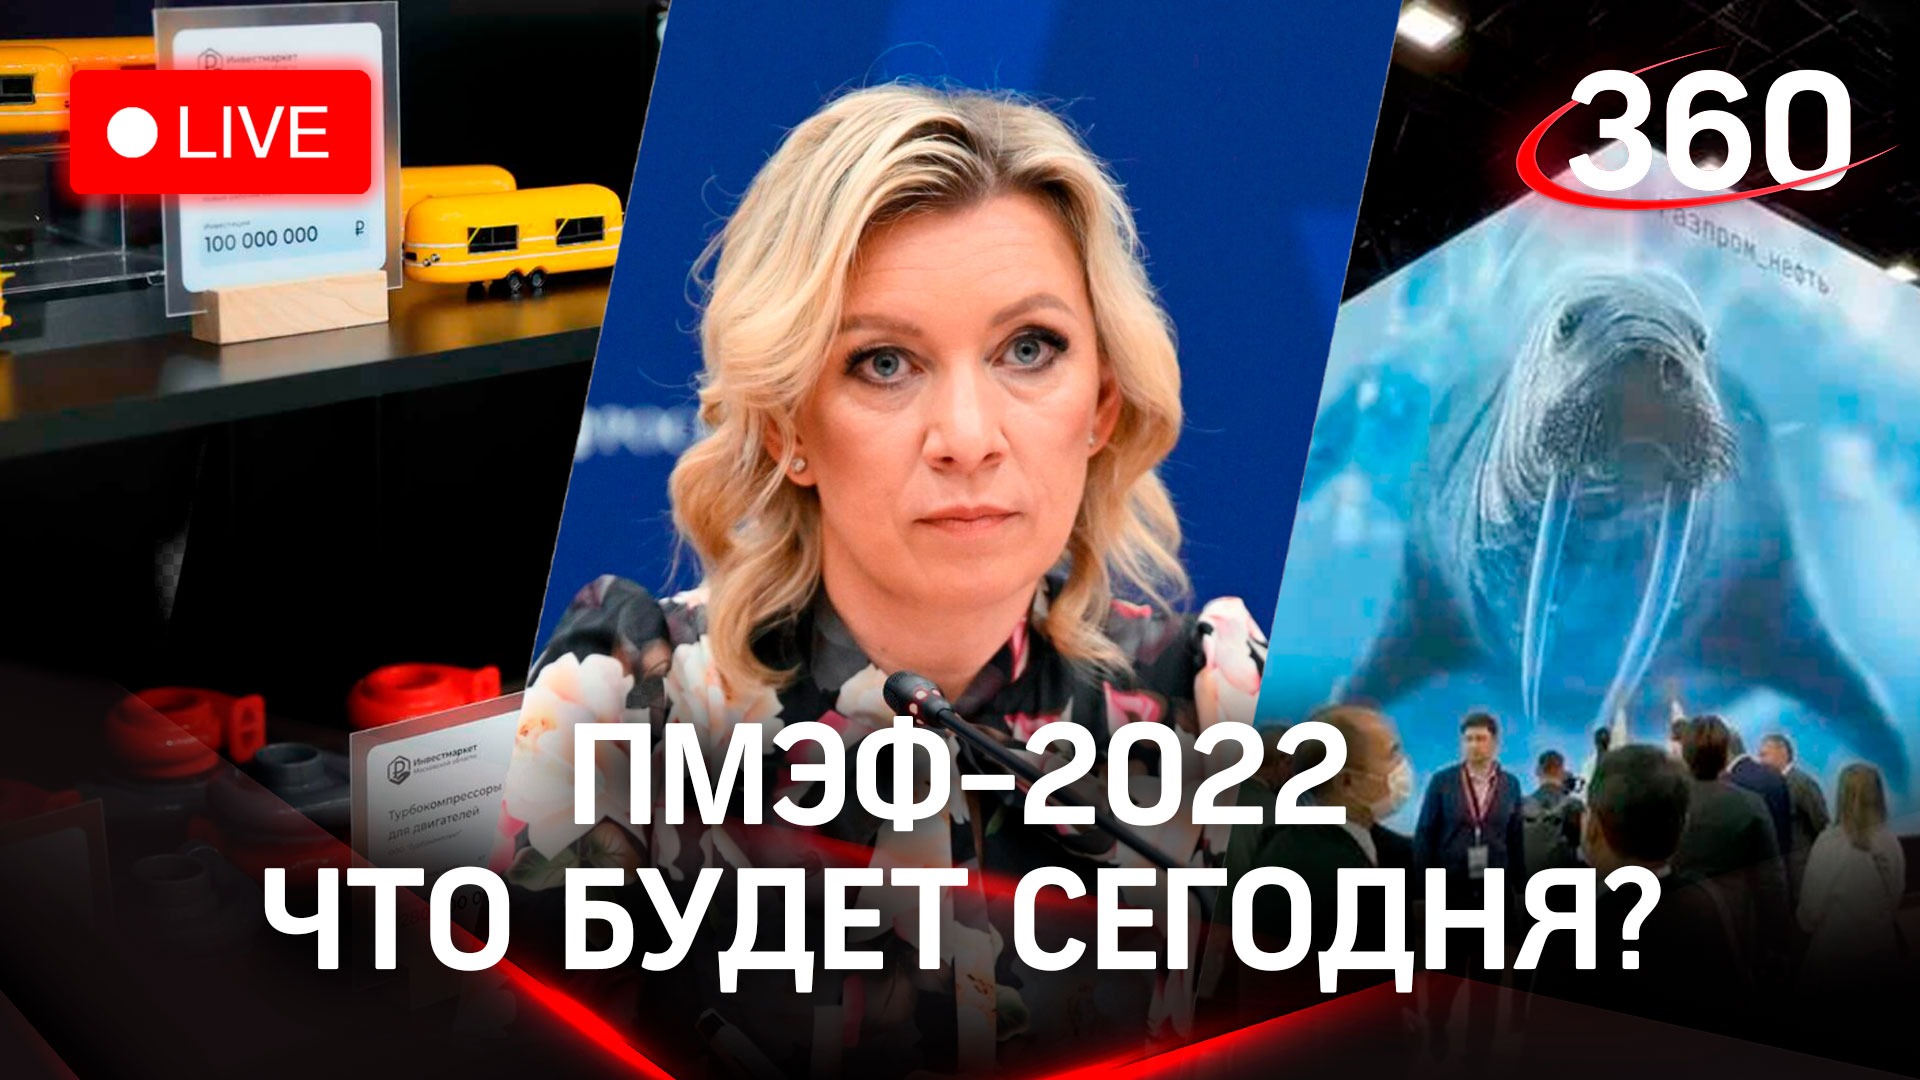 Инвестрмаркет Подмосковья, интервью Захаровой, бизнесмен Киркоров, айсберг и роботы  - ПМЭФ-2022